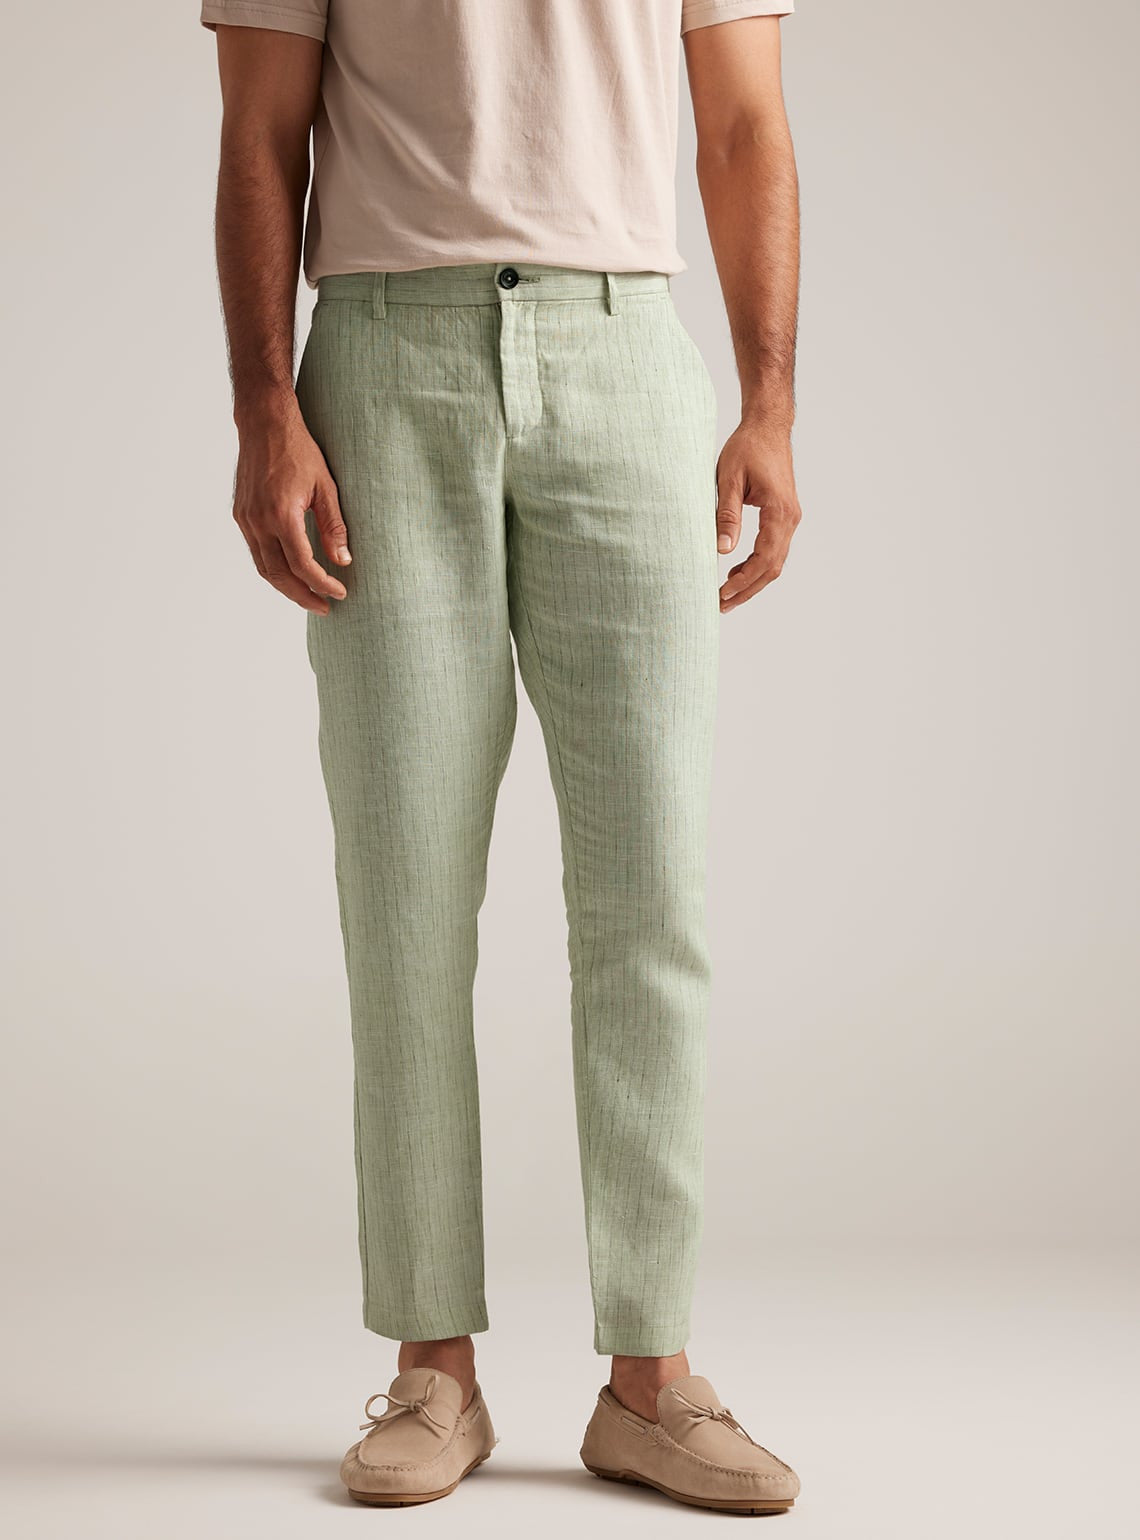 Celadon Stripe Linen Pants